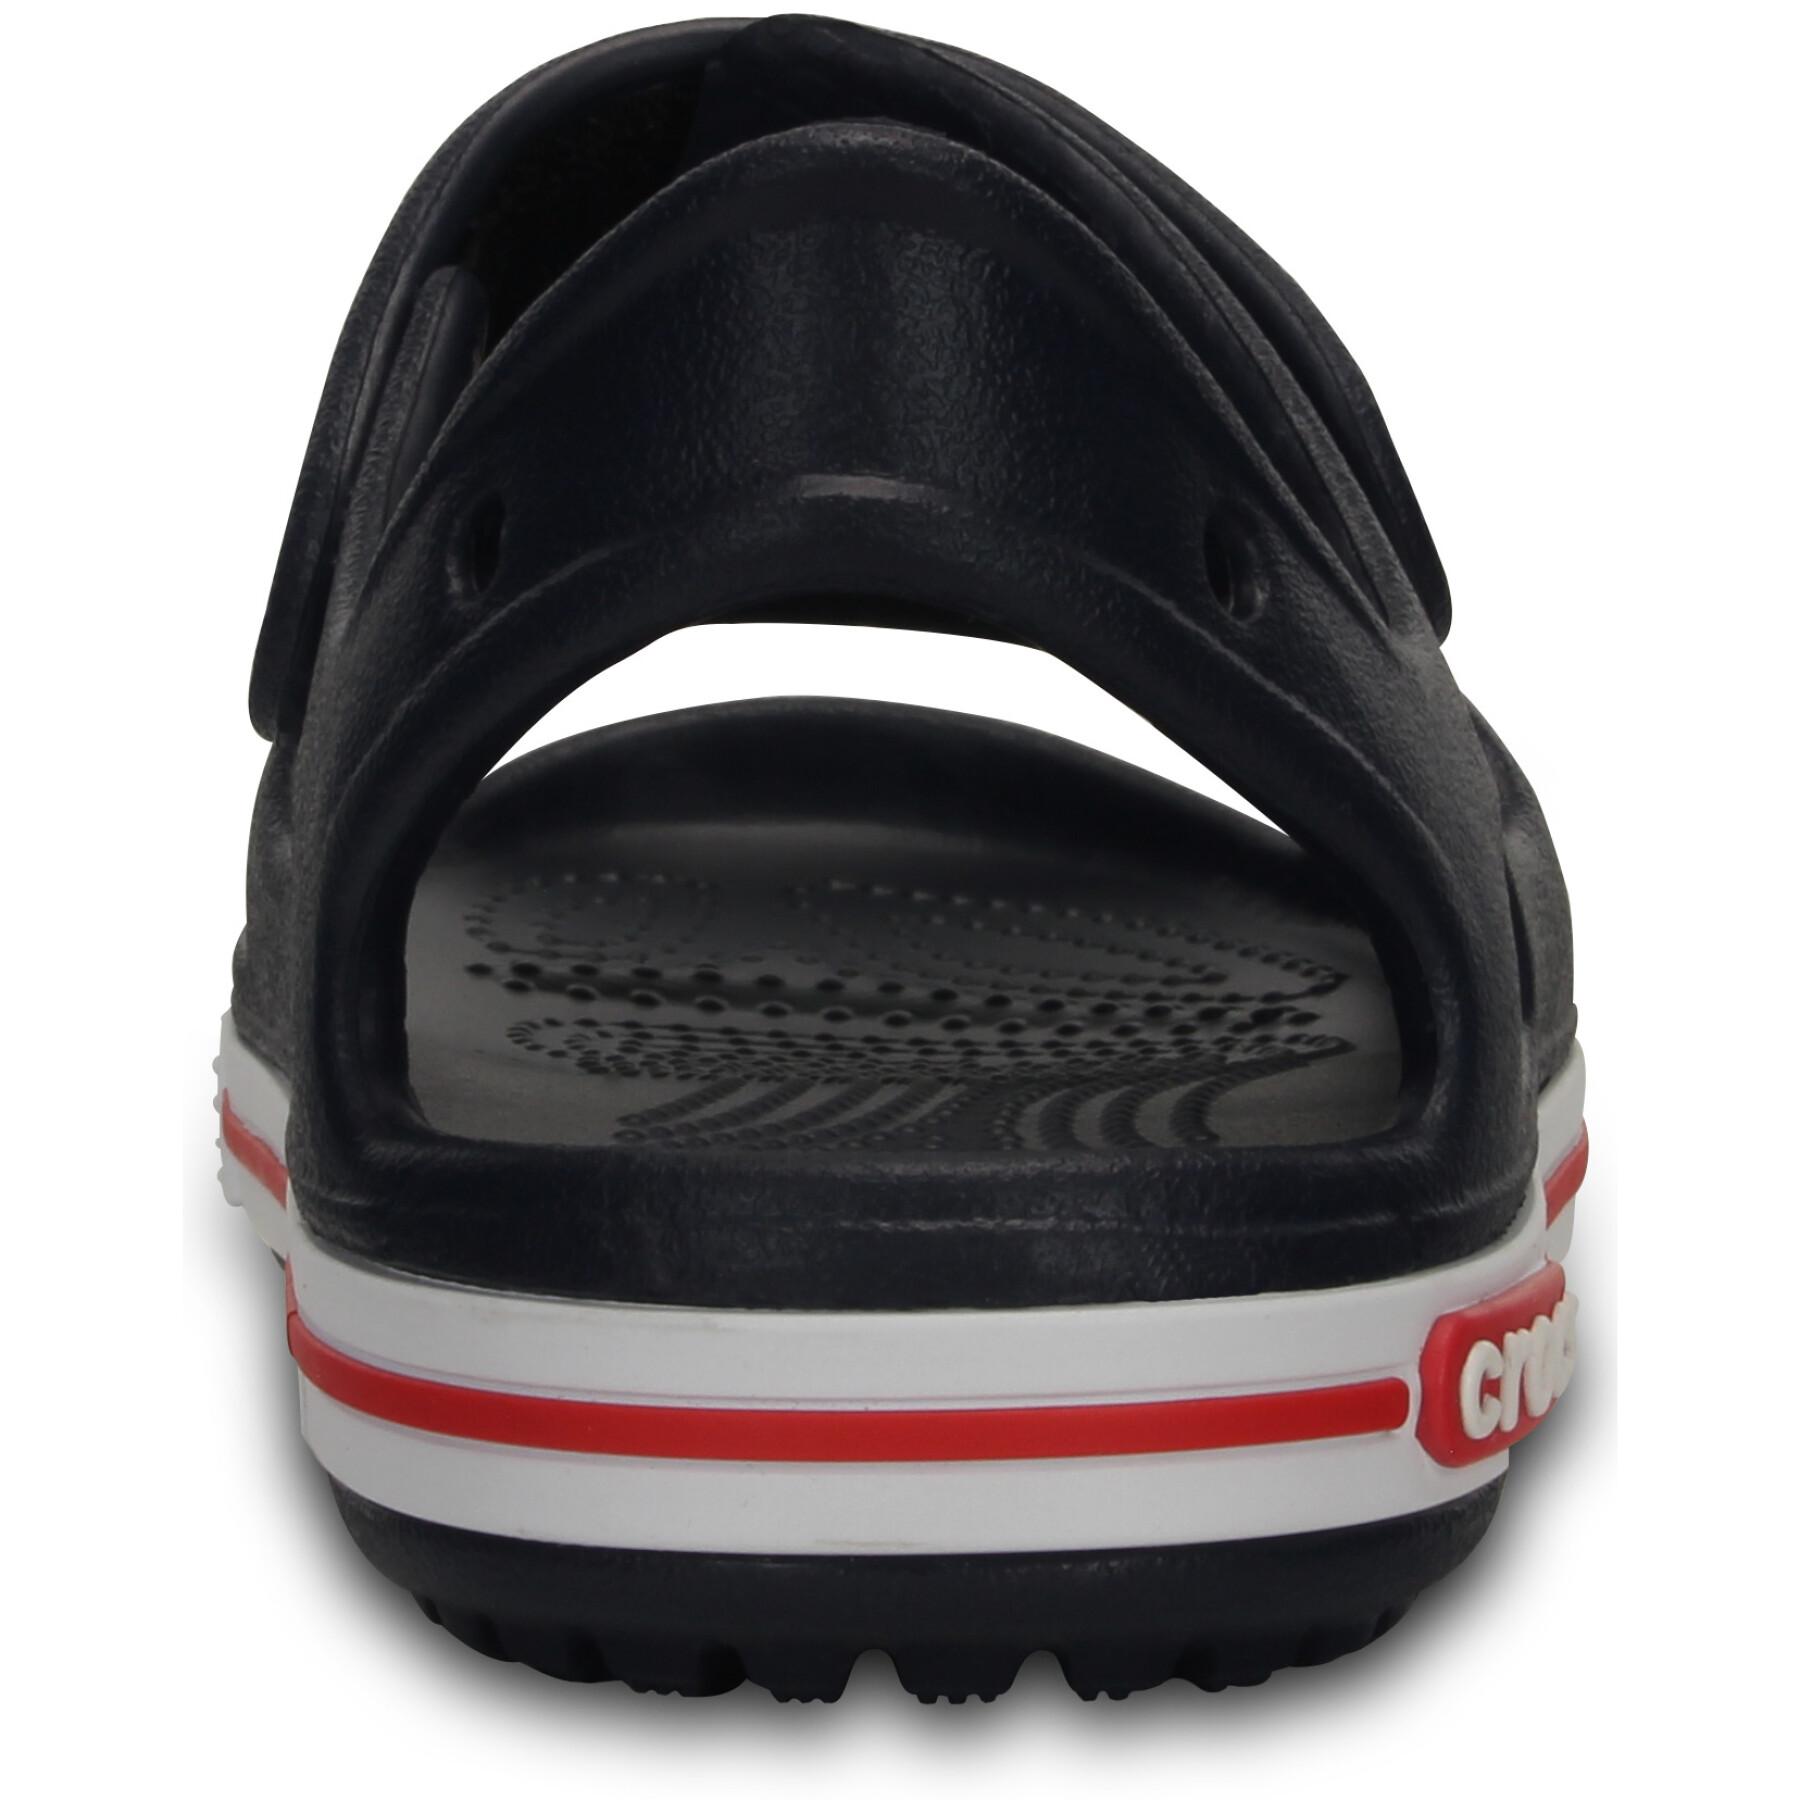 Children's sandals Crocs preschool crocband™II